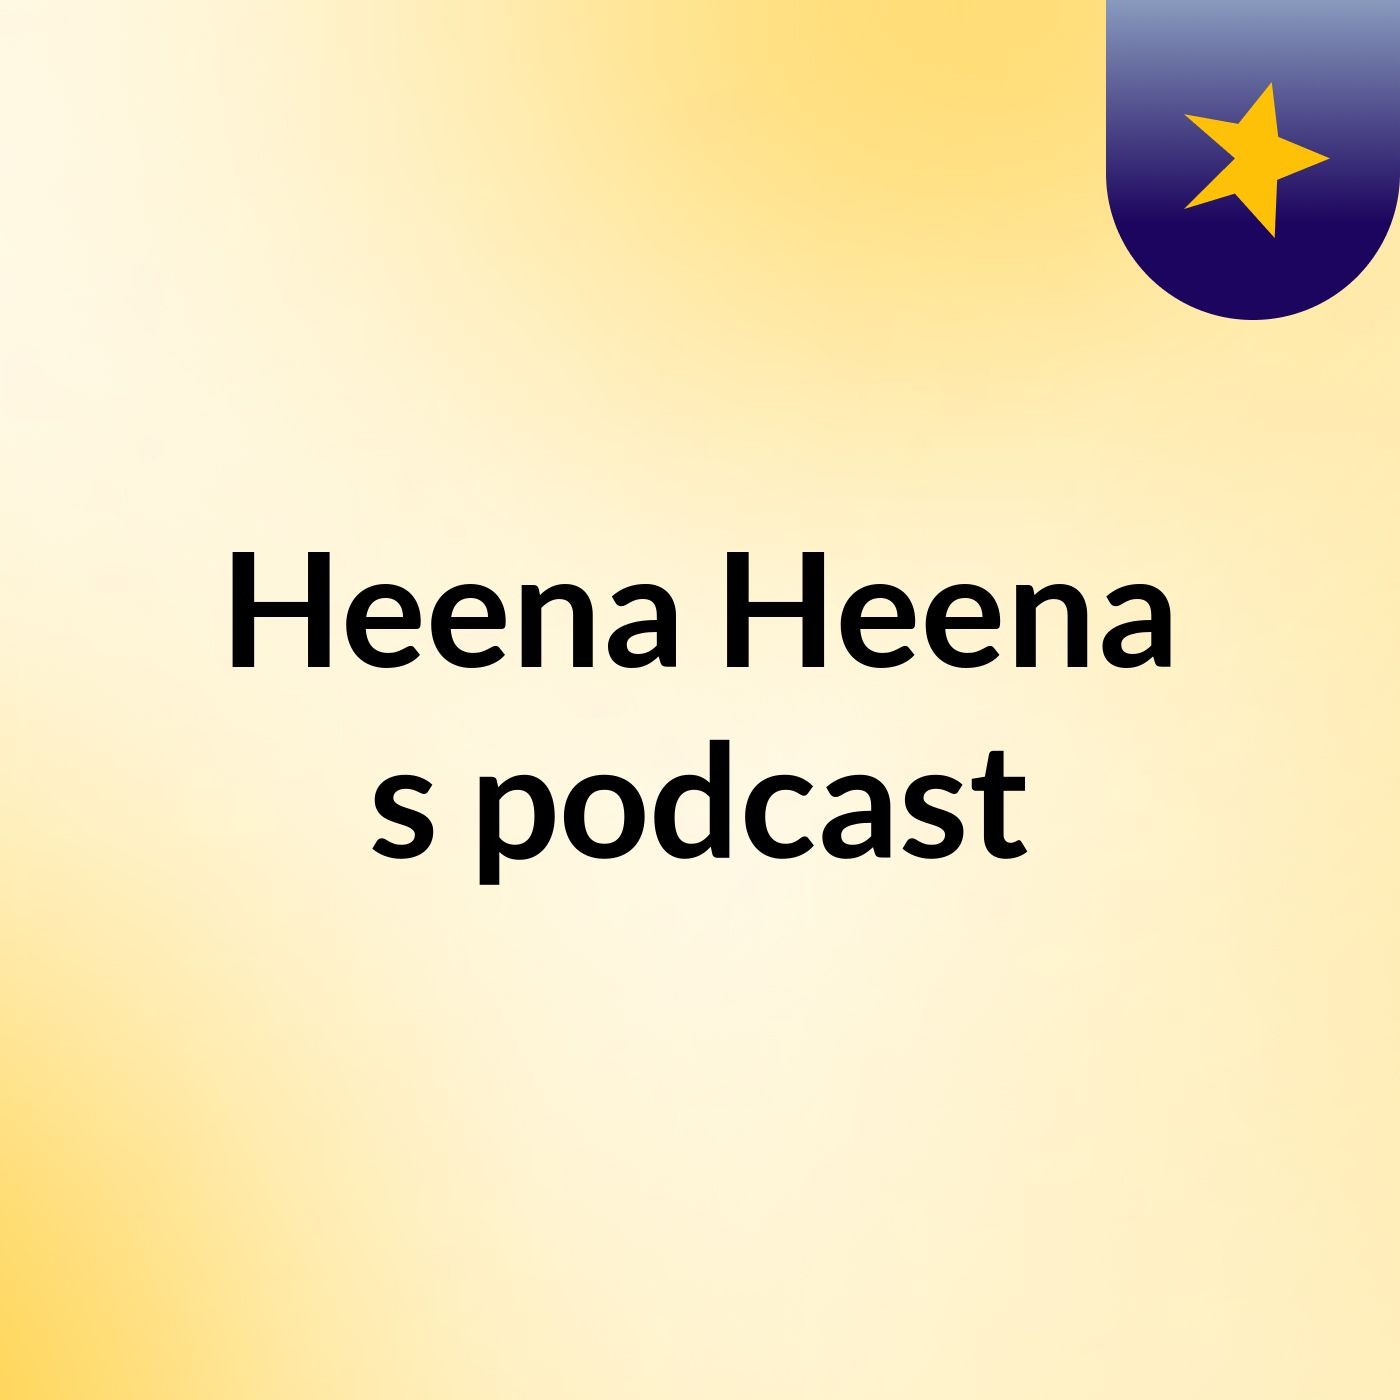 Heena Heena's podcast